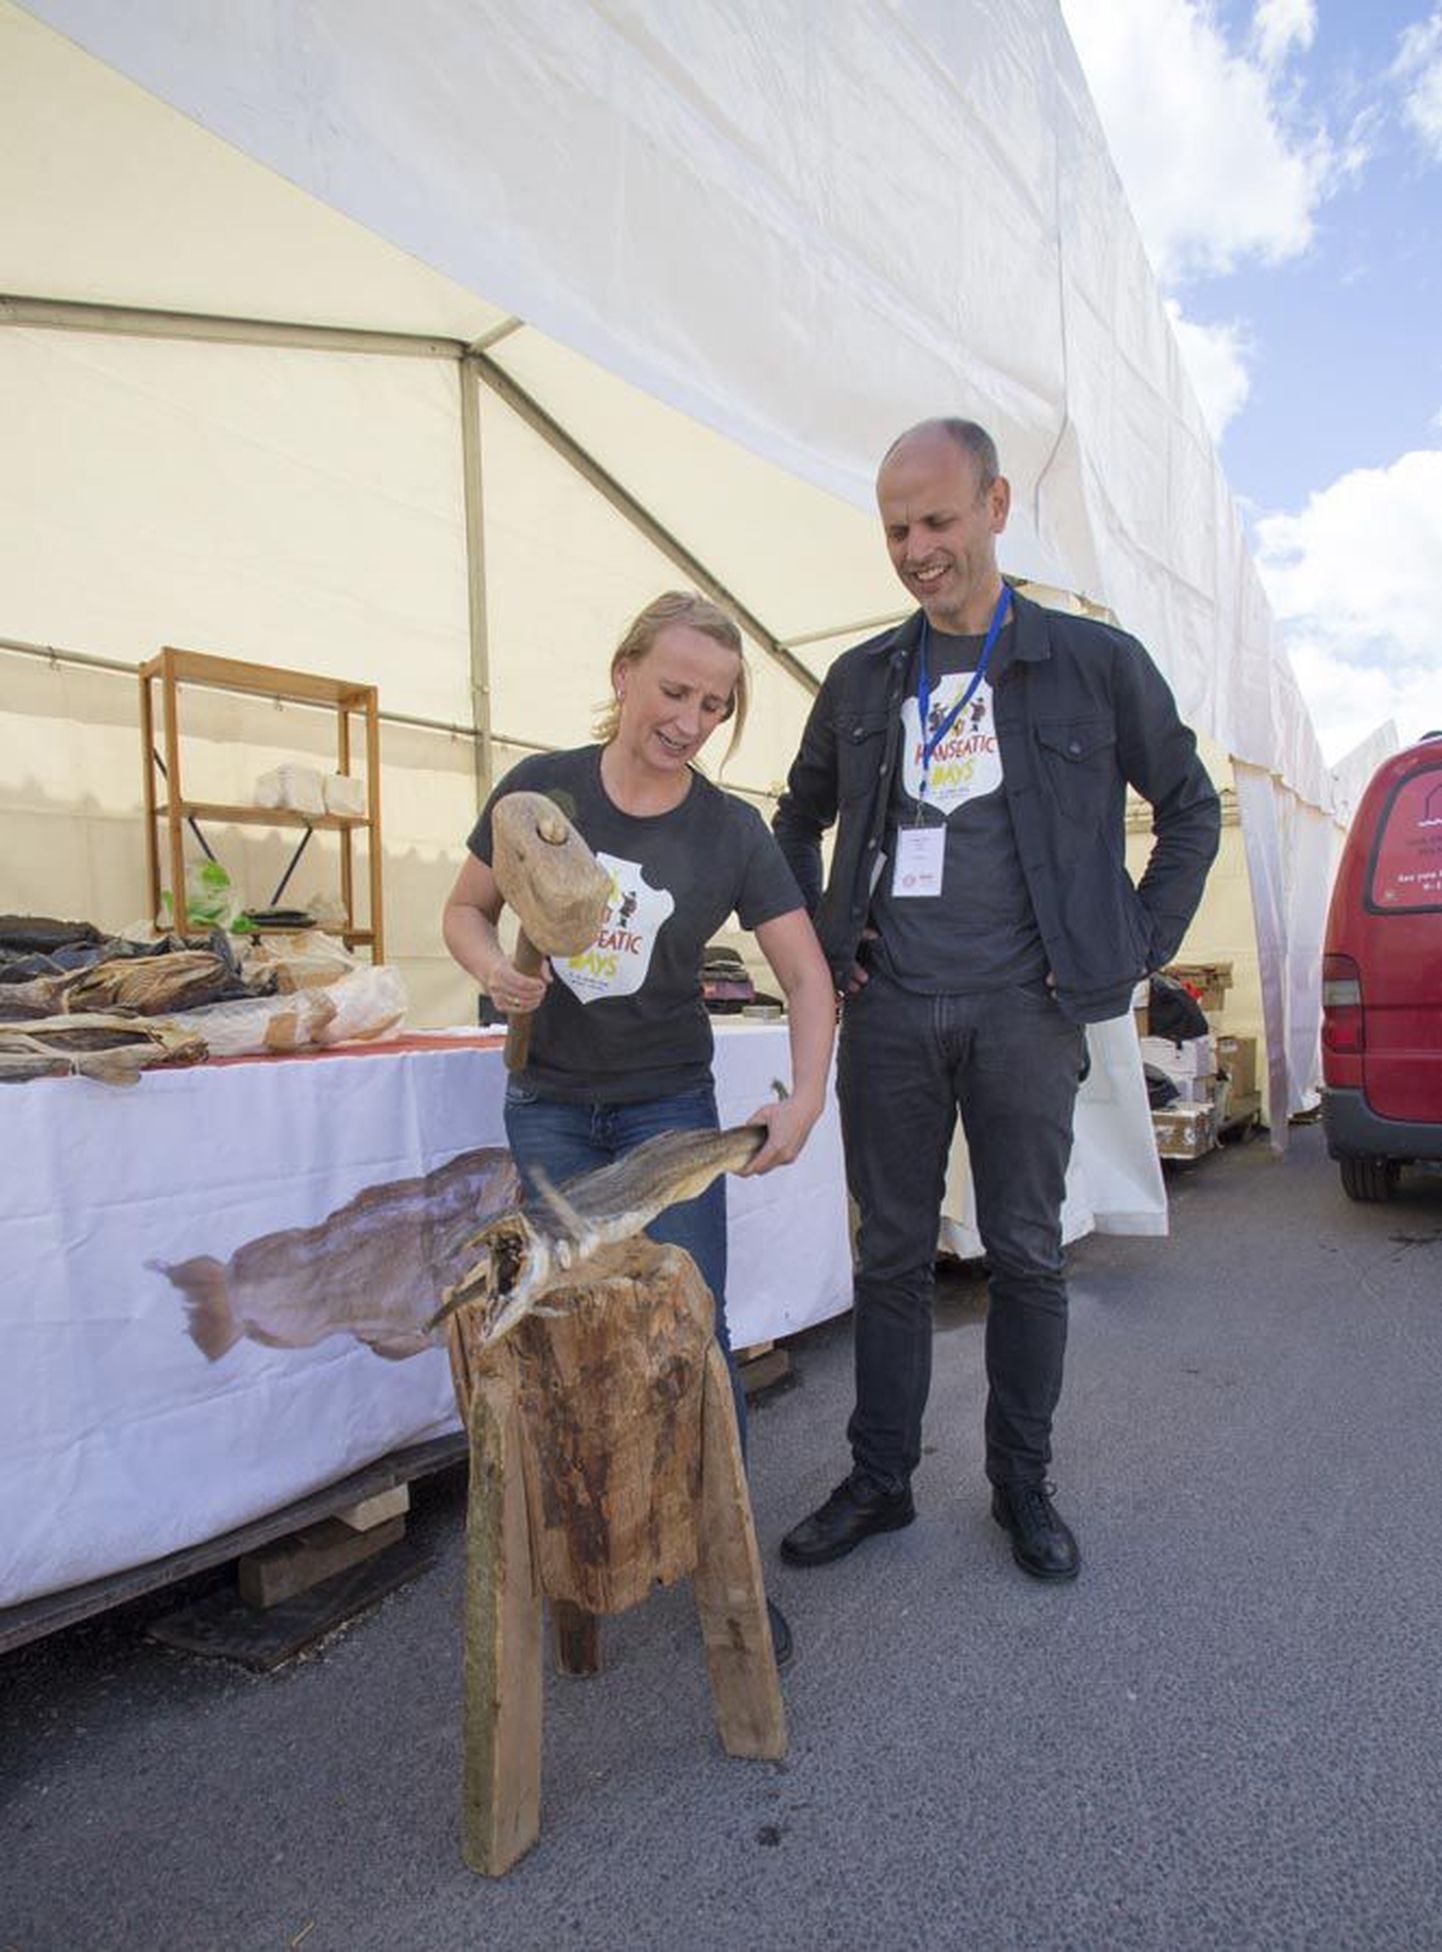 Bergeni esinduse kokk Kristine Øvrebø näitas, kuidas eriliselt kuivatatud kala söömiseks ette valmistatakse. Tema kõrval on projektijuht Haaken Vatle.